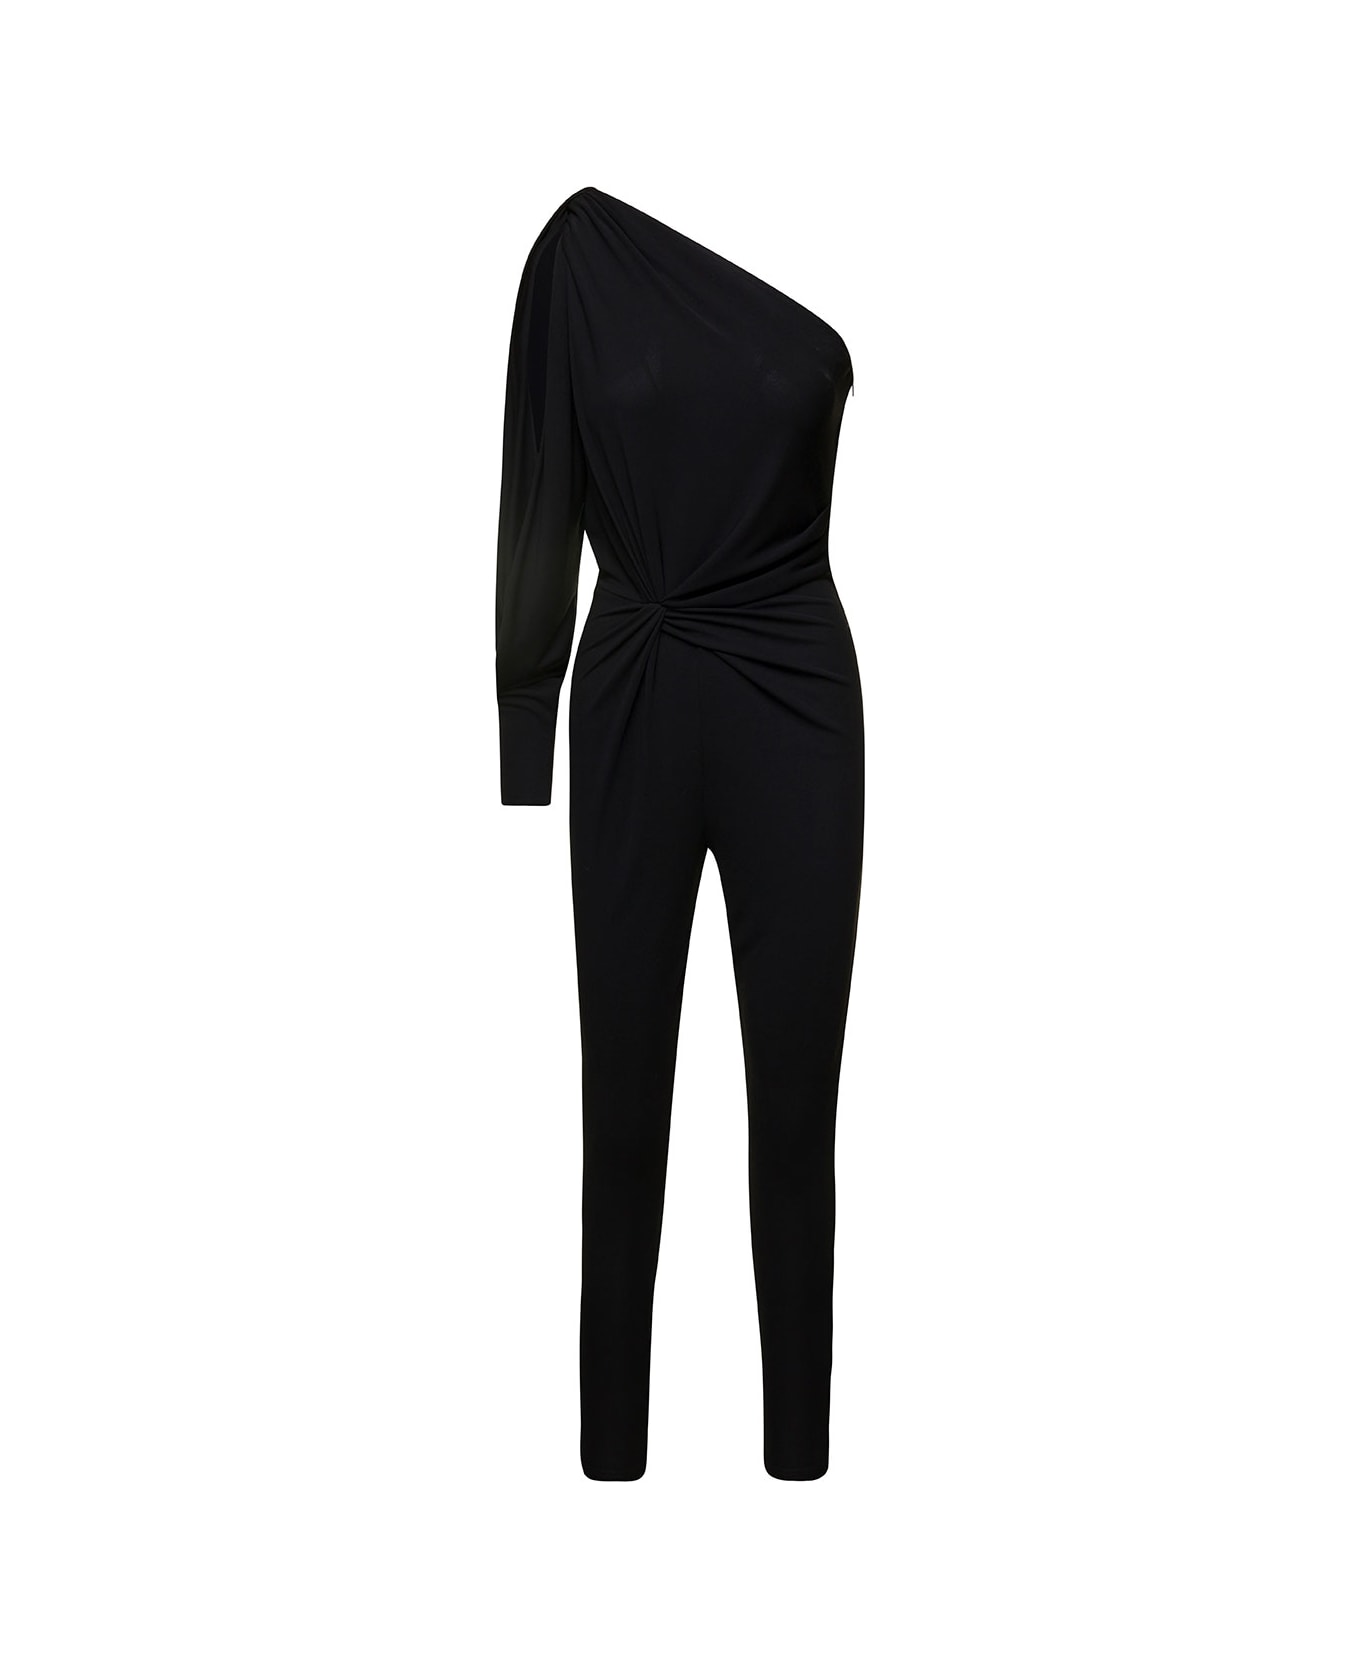 Saint Laurent One-shoulder Jumpsuit With Side Gathering - Black ジャンプスーツ